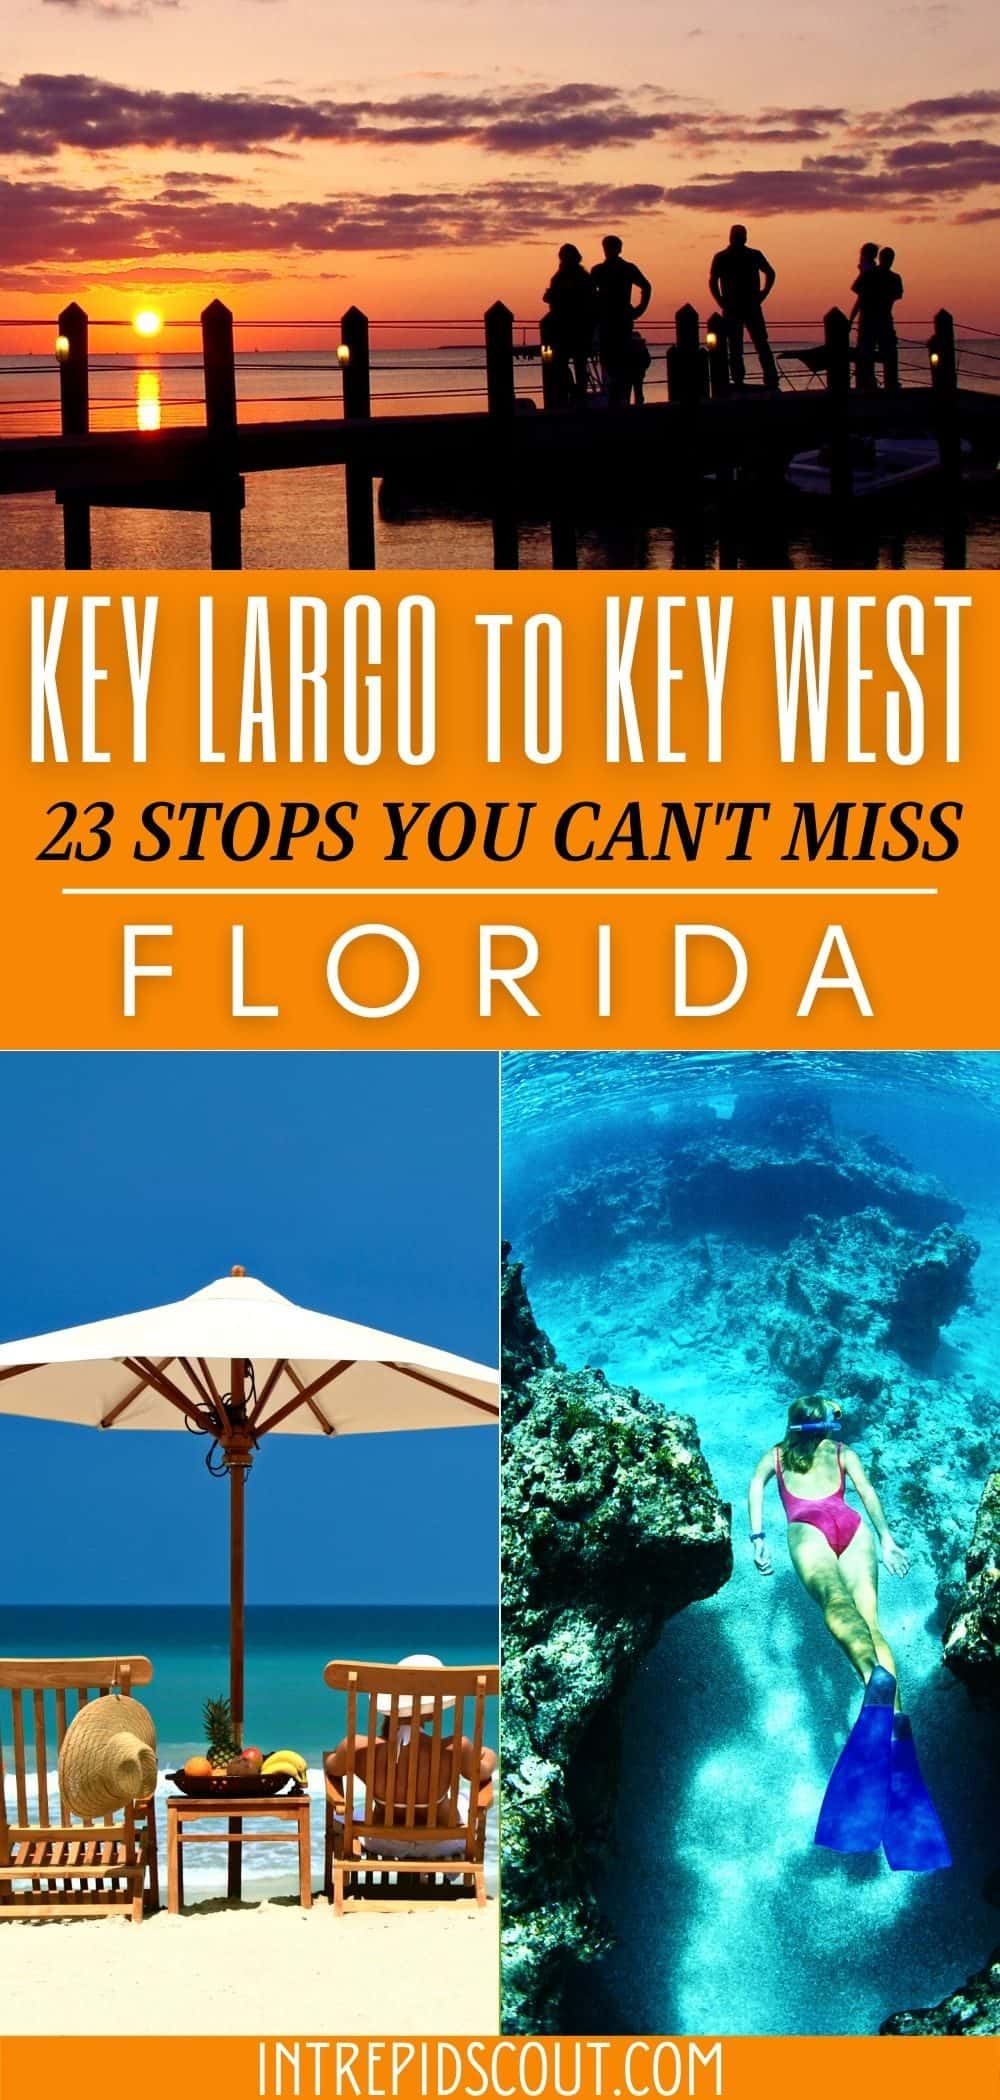 Key Largo to Key West